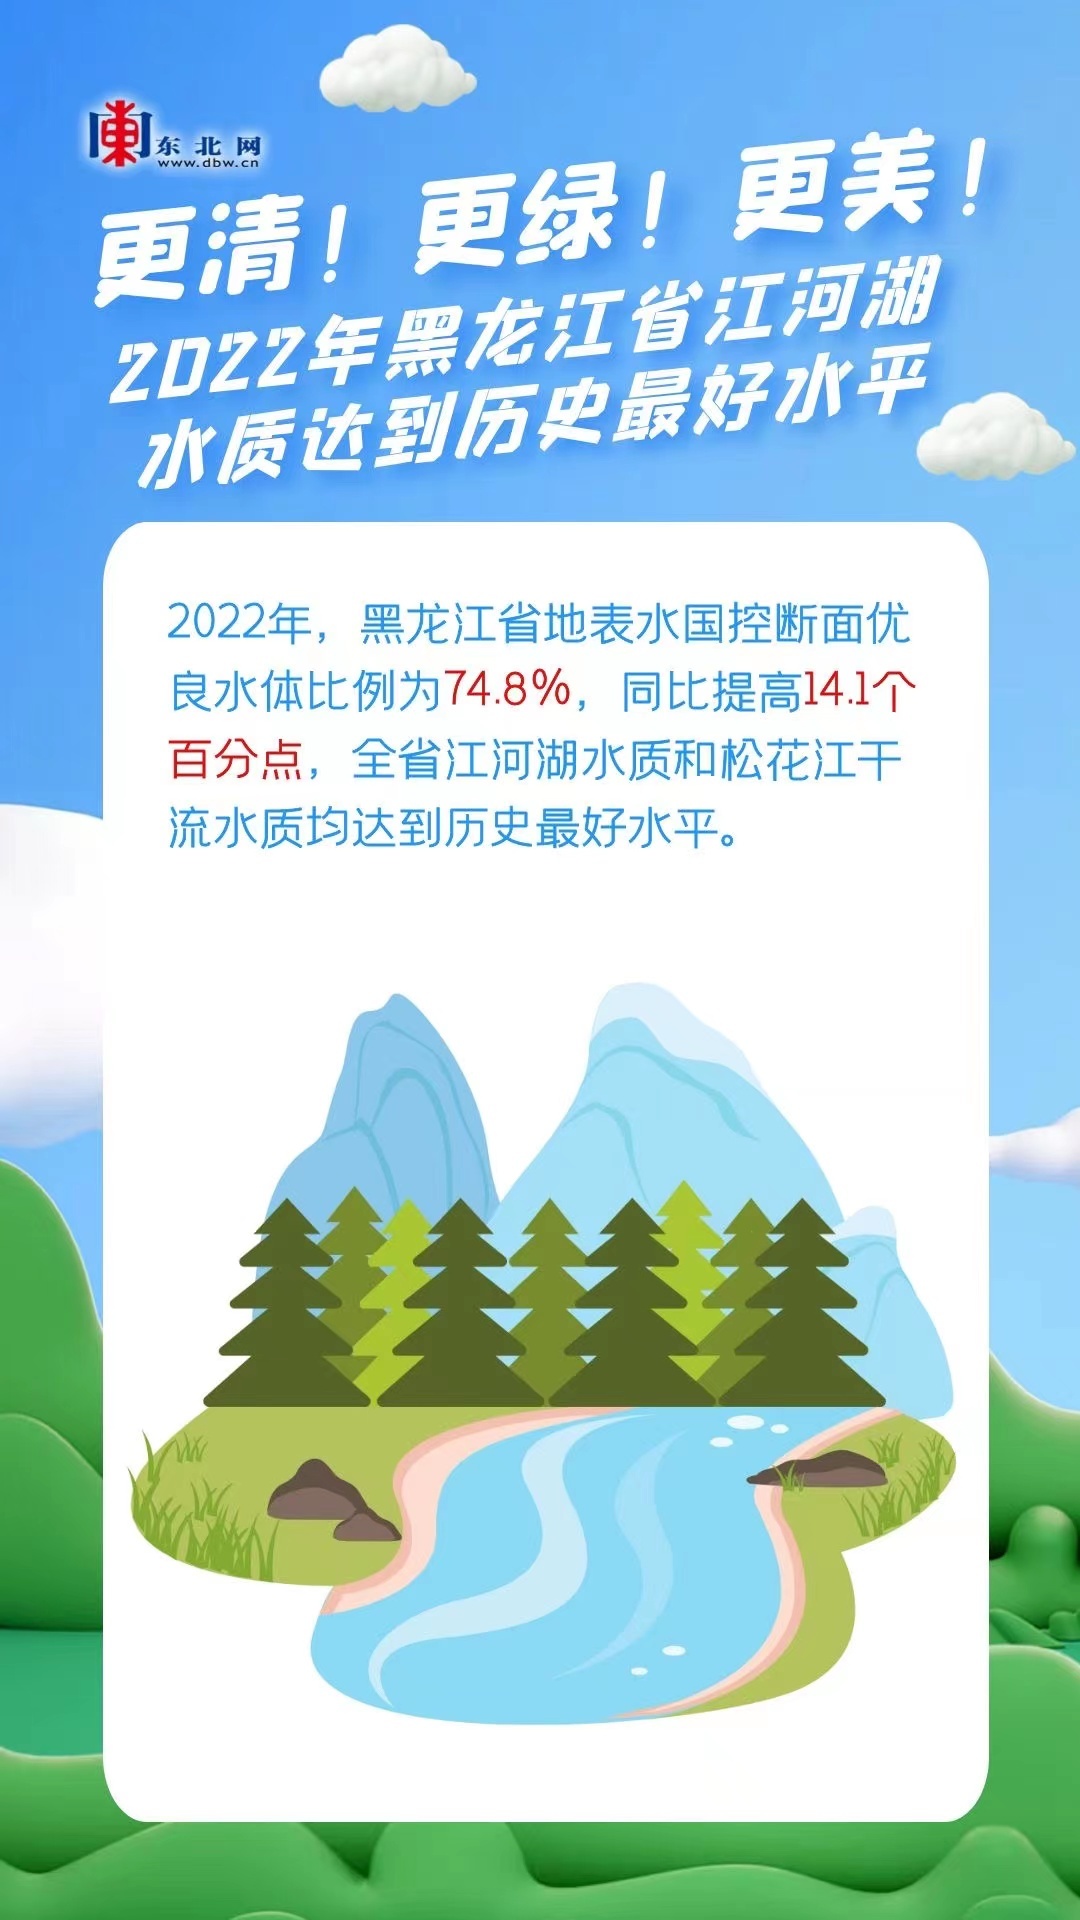 海报 | 更清！更绿！更美！2022年黑龙江省江河湖水质达到历史最好水平